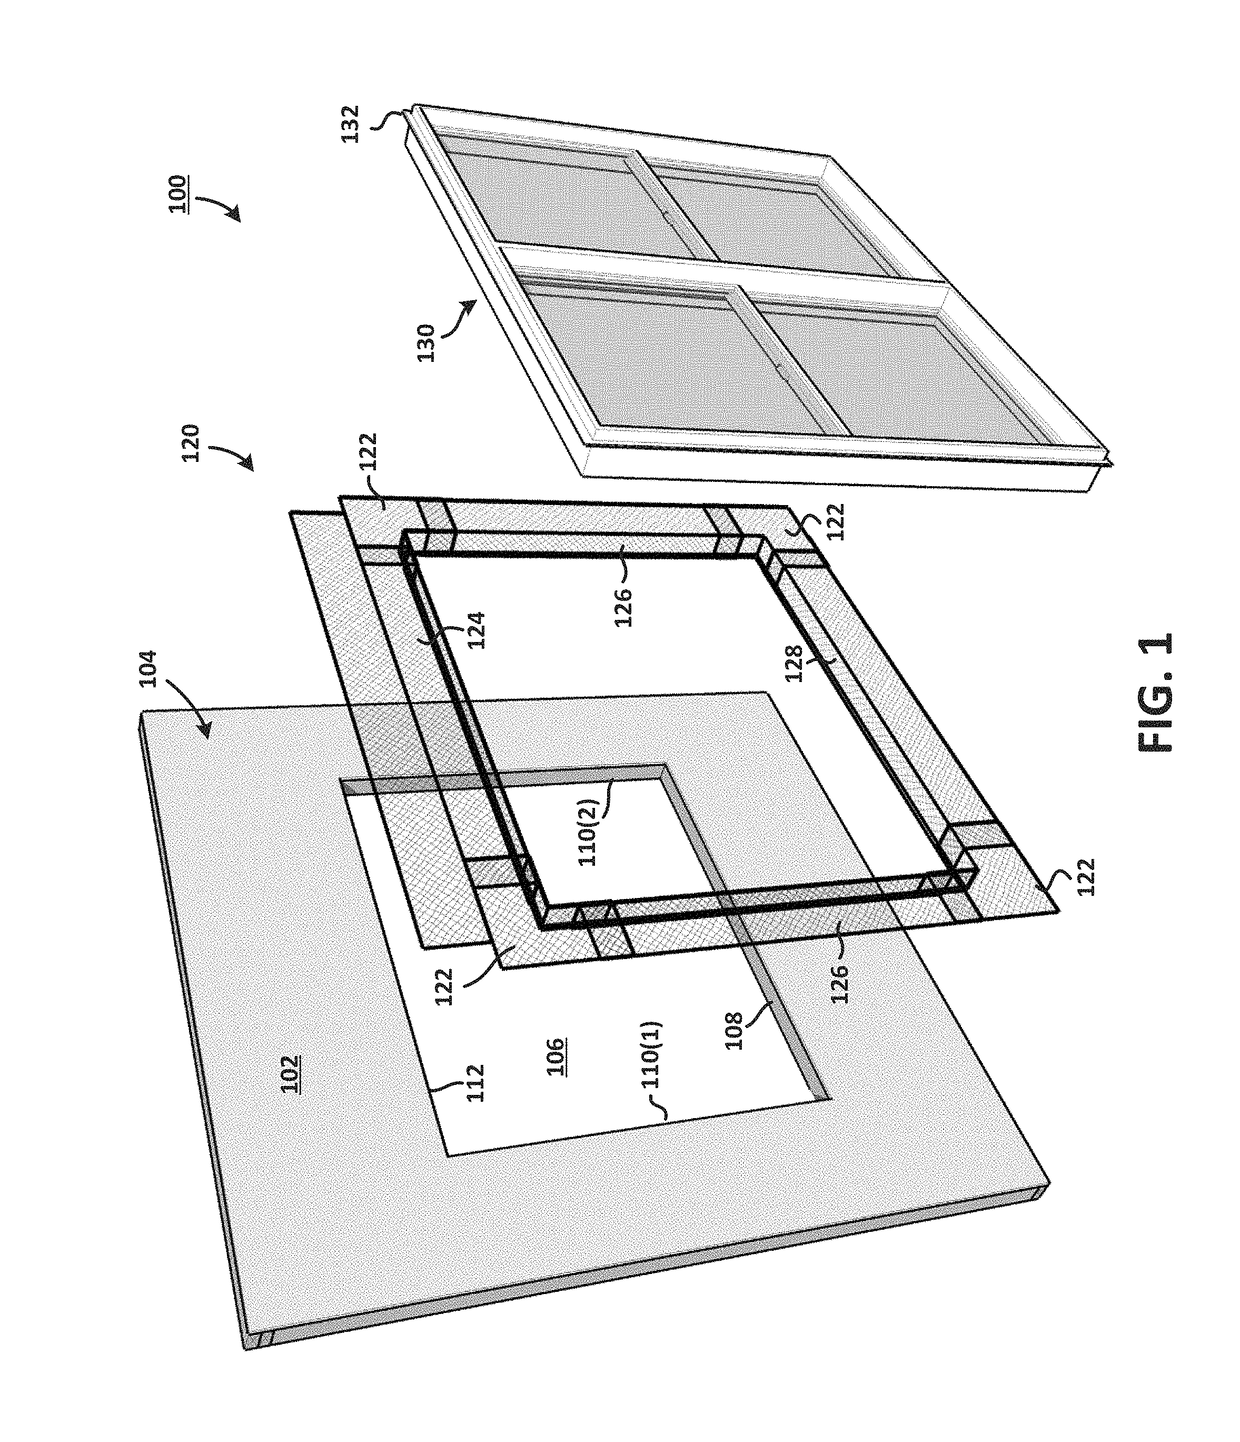 Three-dimensional prefabricated flashing scaffolding system